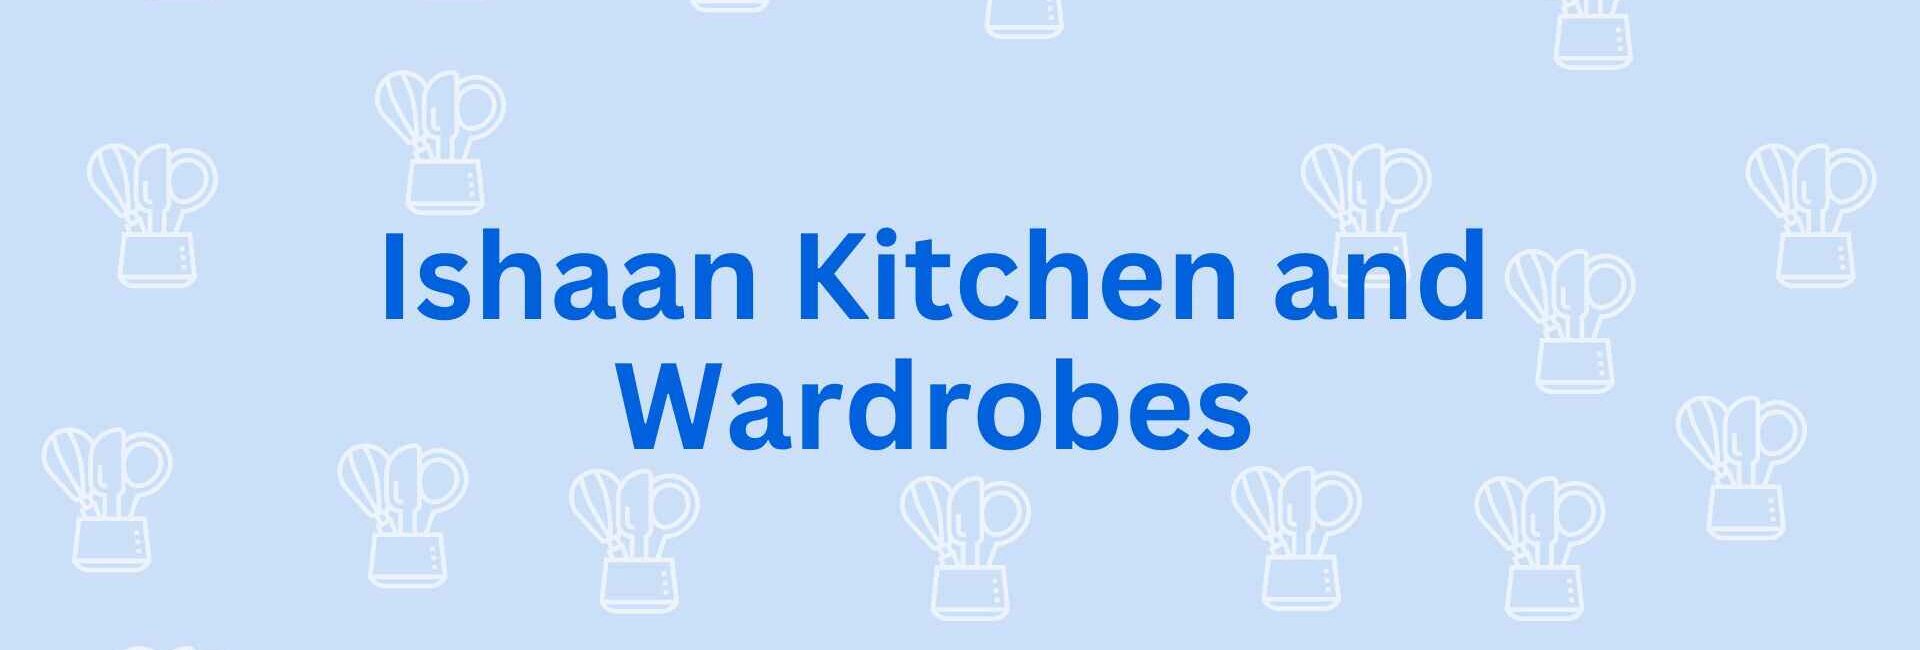 Ishaan Kitchen and Wardrobes - Modular Kitchen Dealer in NoidaModular Kitchen Service in Noida